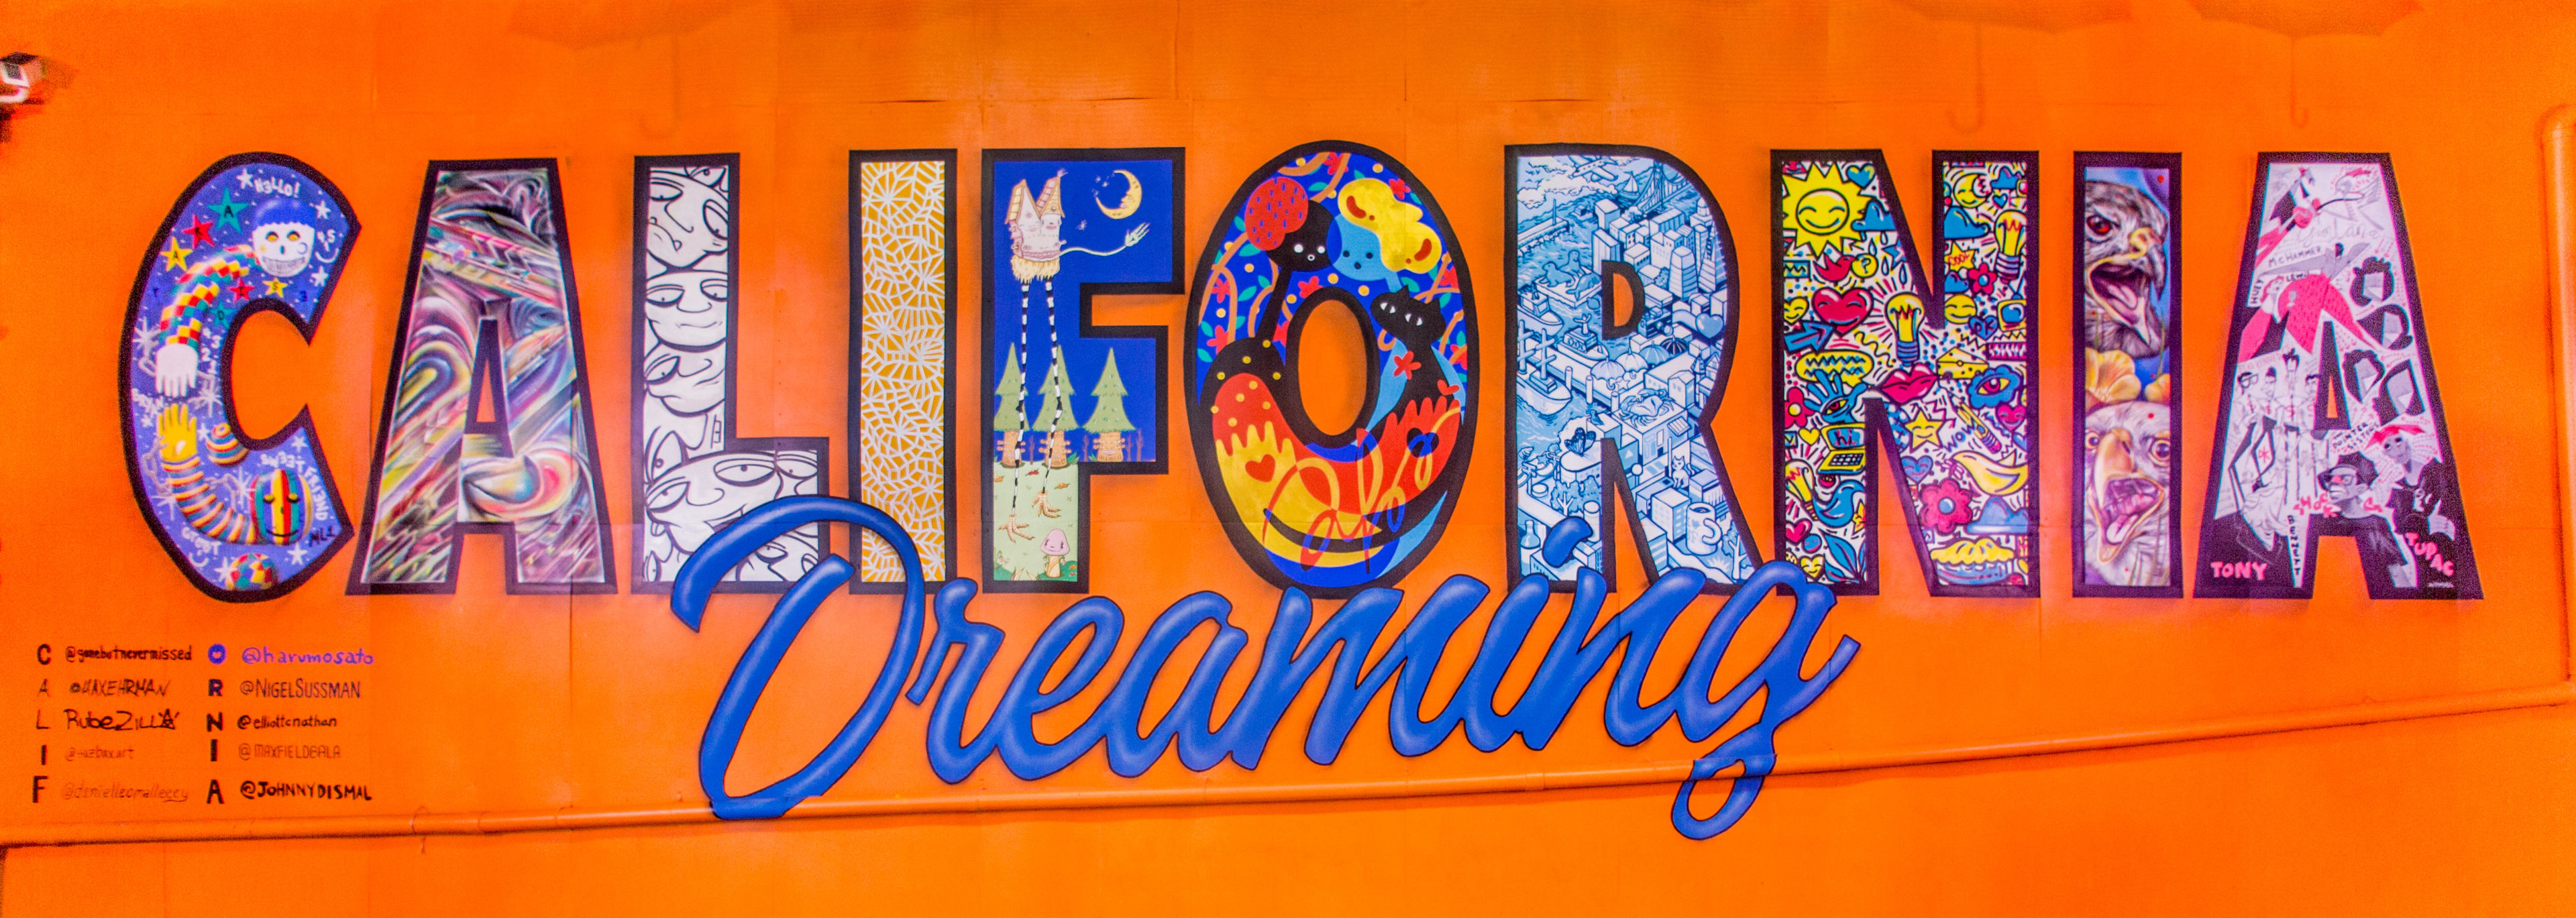 Mural warna-warni bertuliskan "California Dreaming" di Umbrella Alley, Oakland, CA